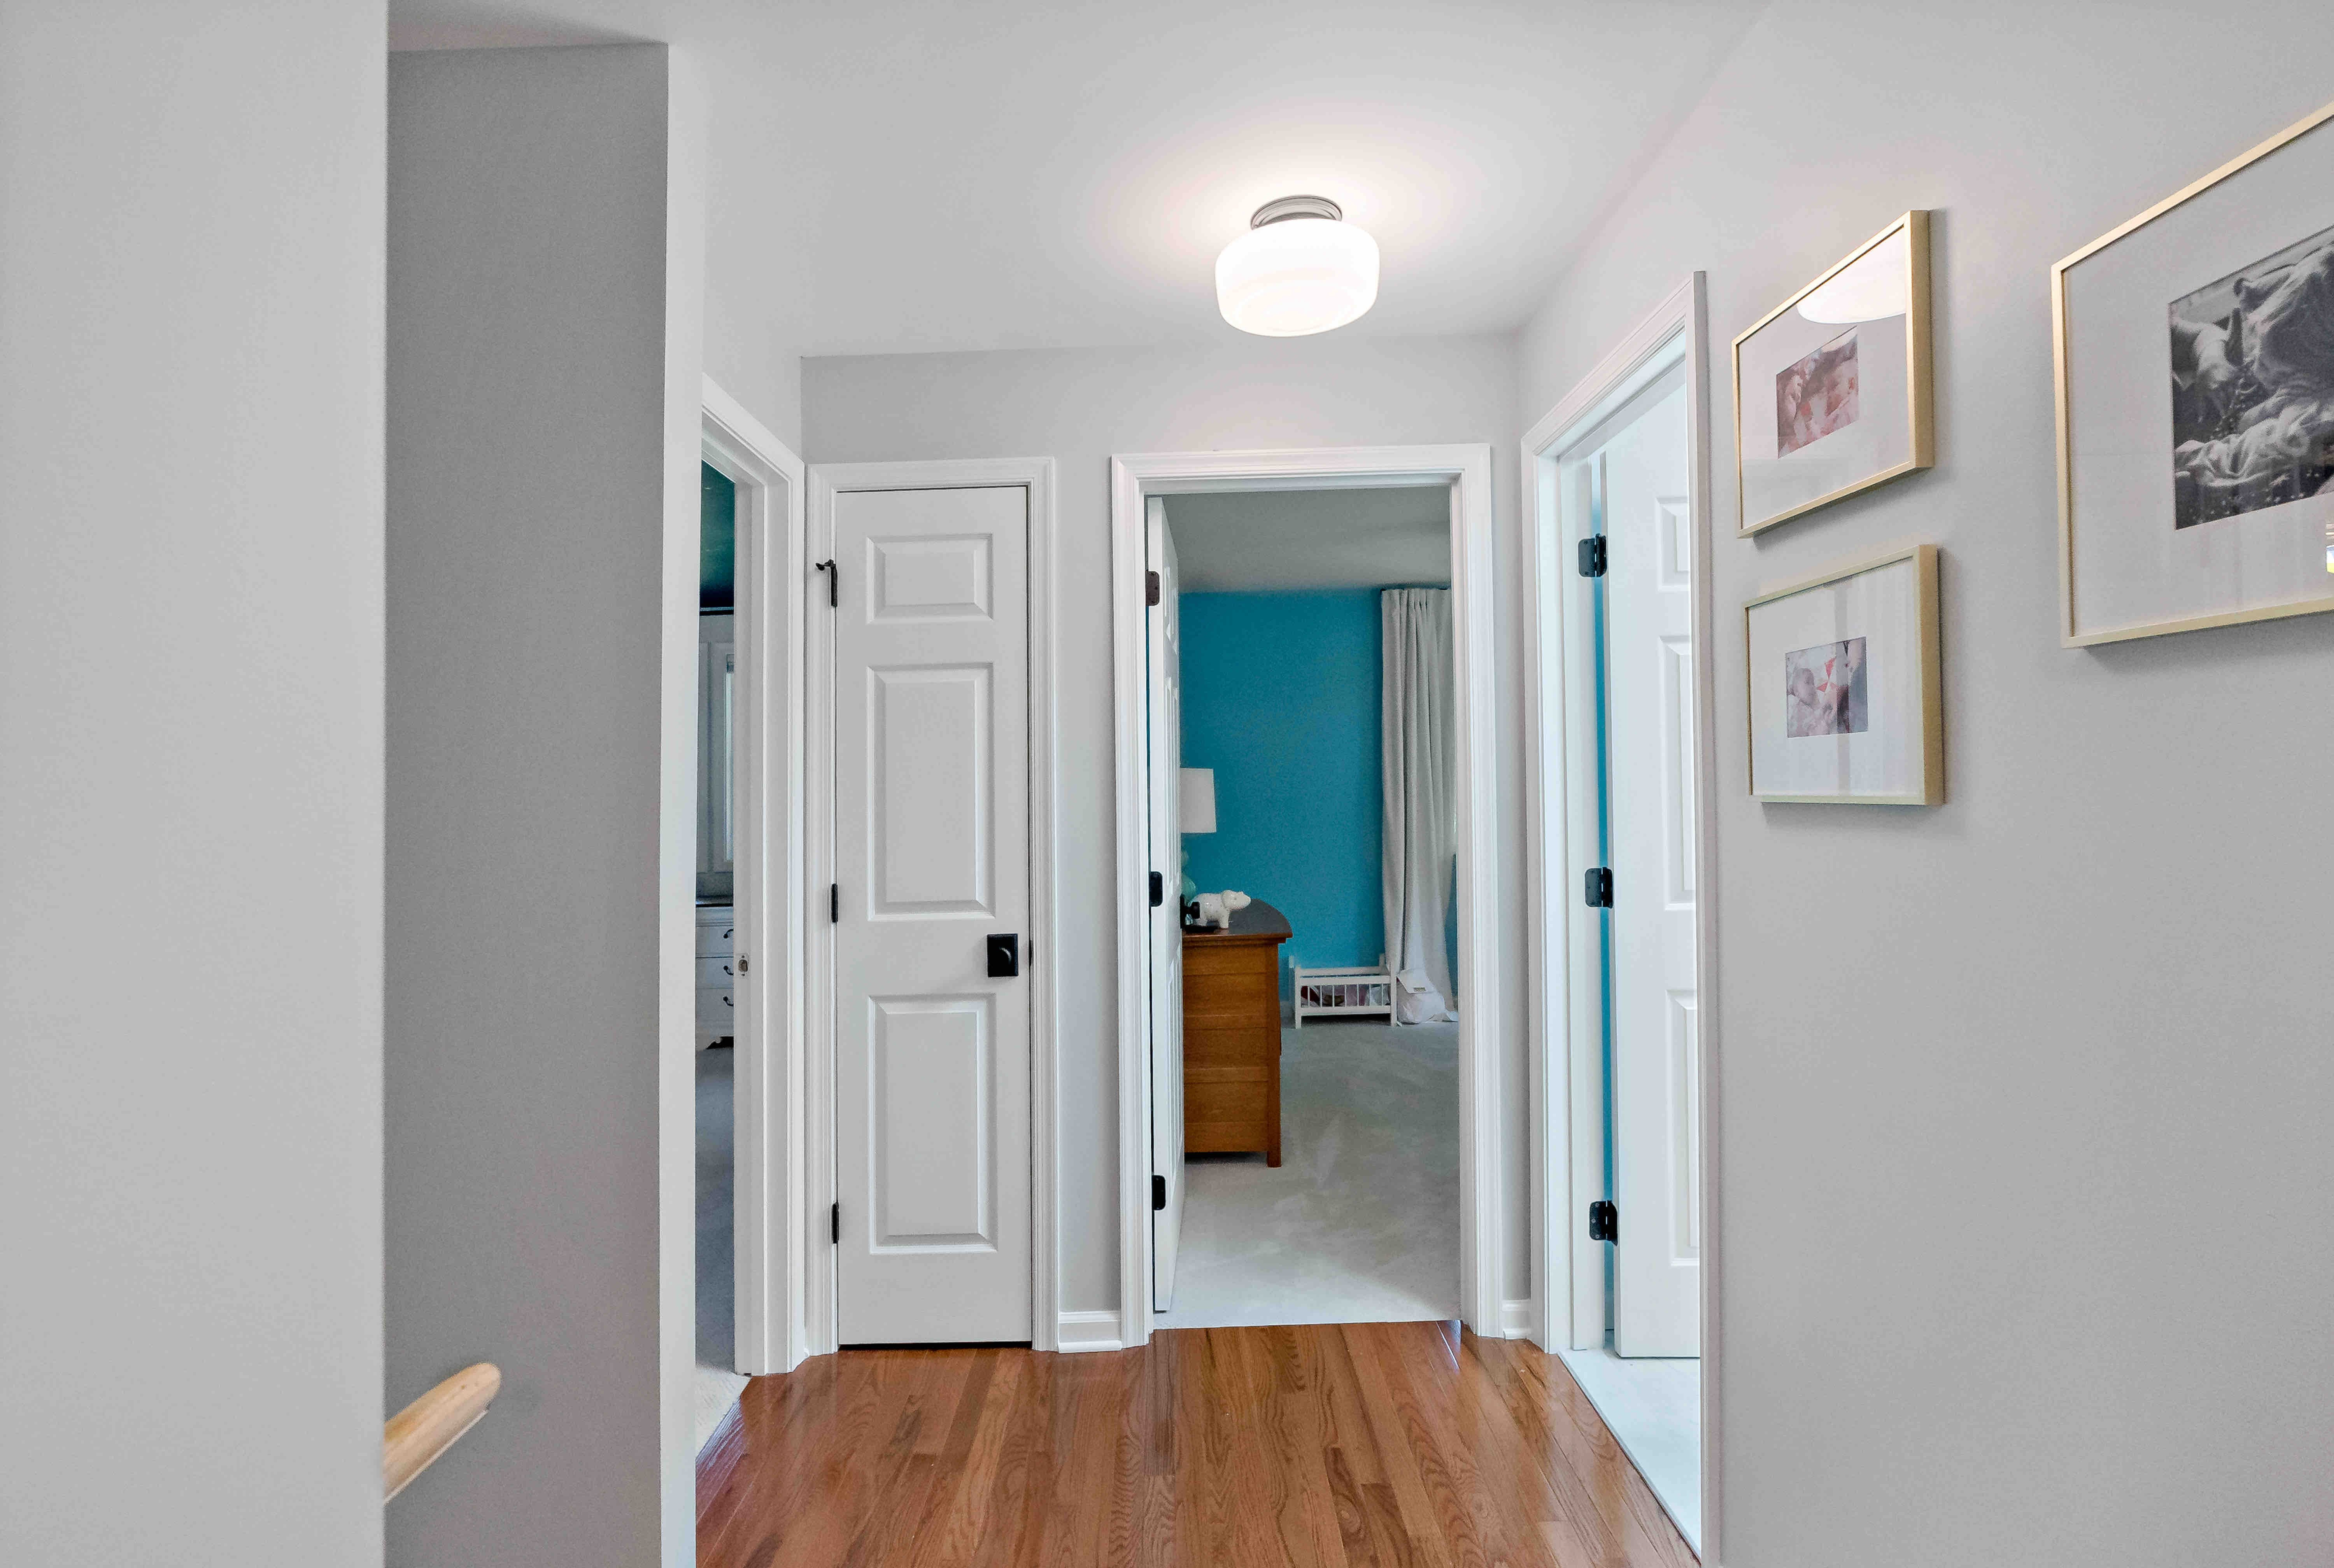 Hard wood floor hallway leading to bedroom